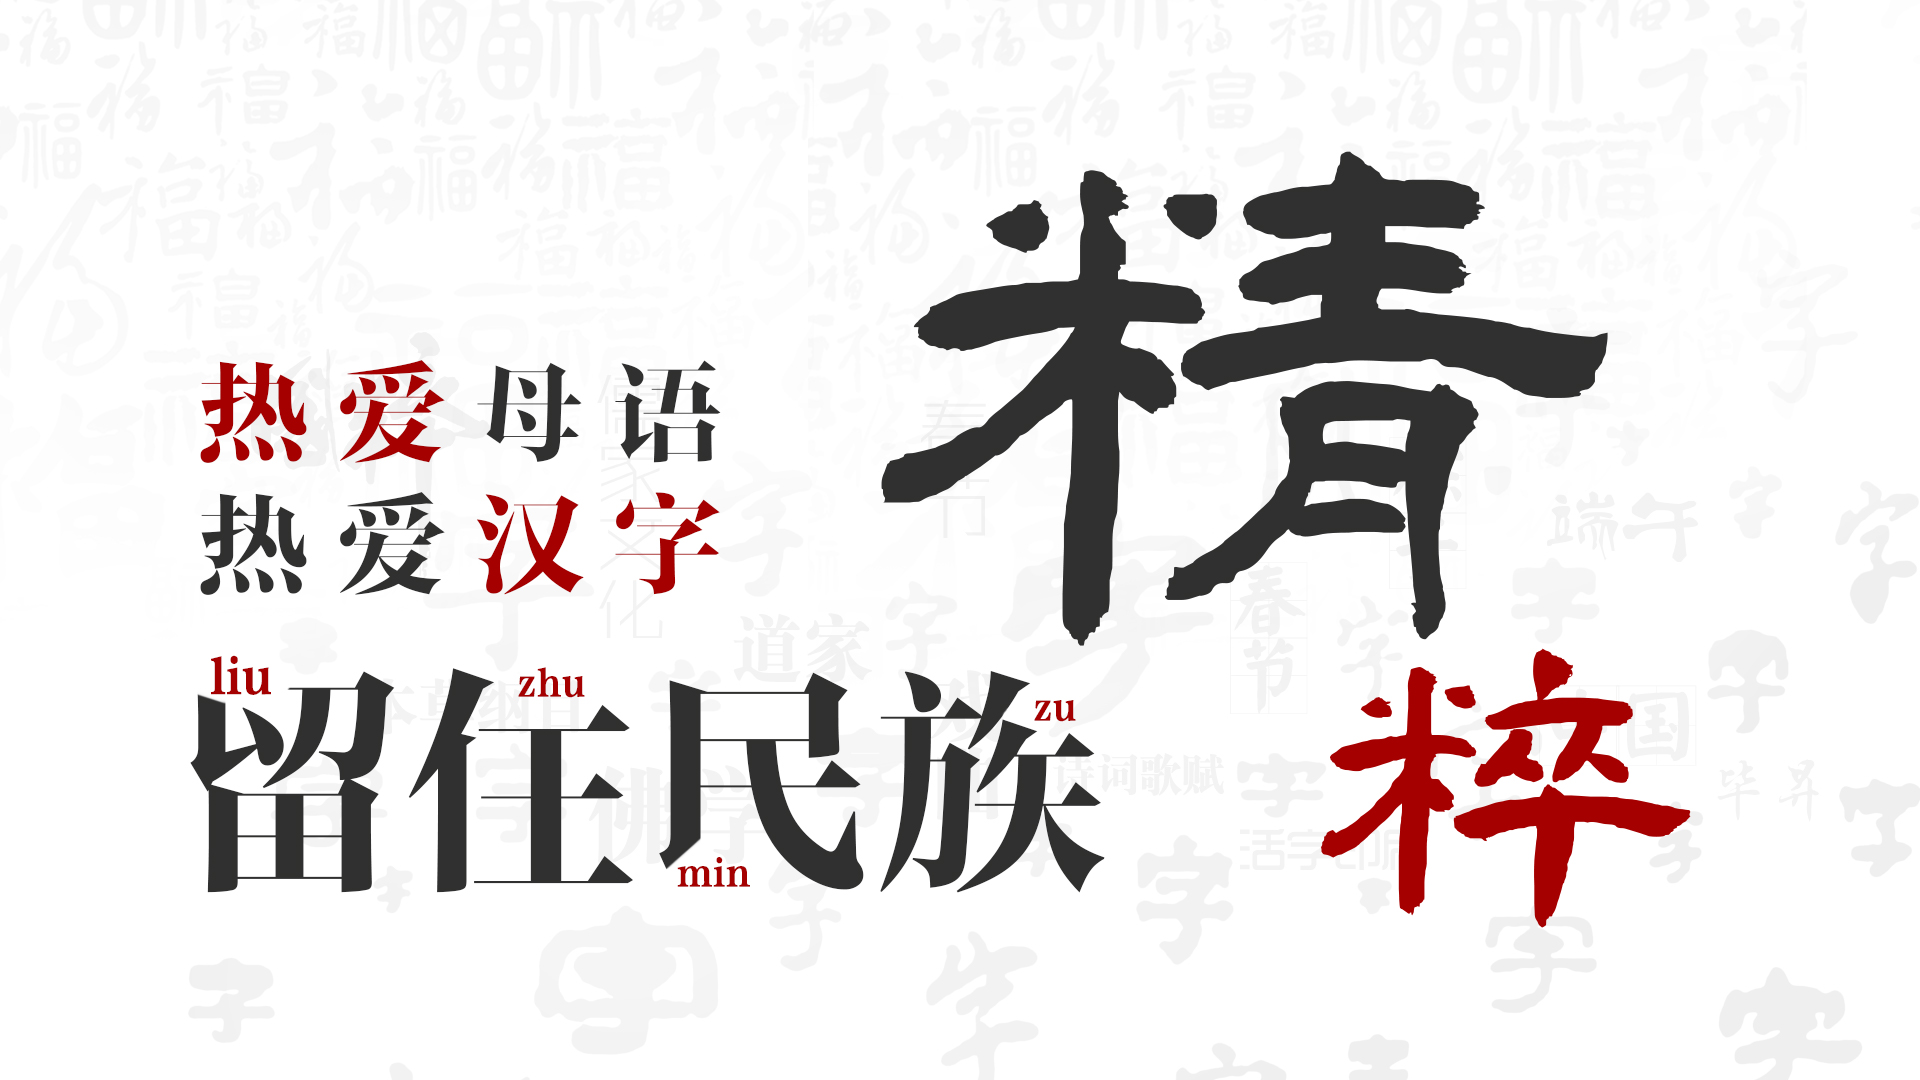 遨游汉字传统文化封面设计